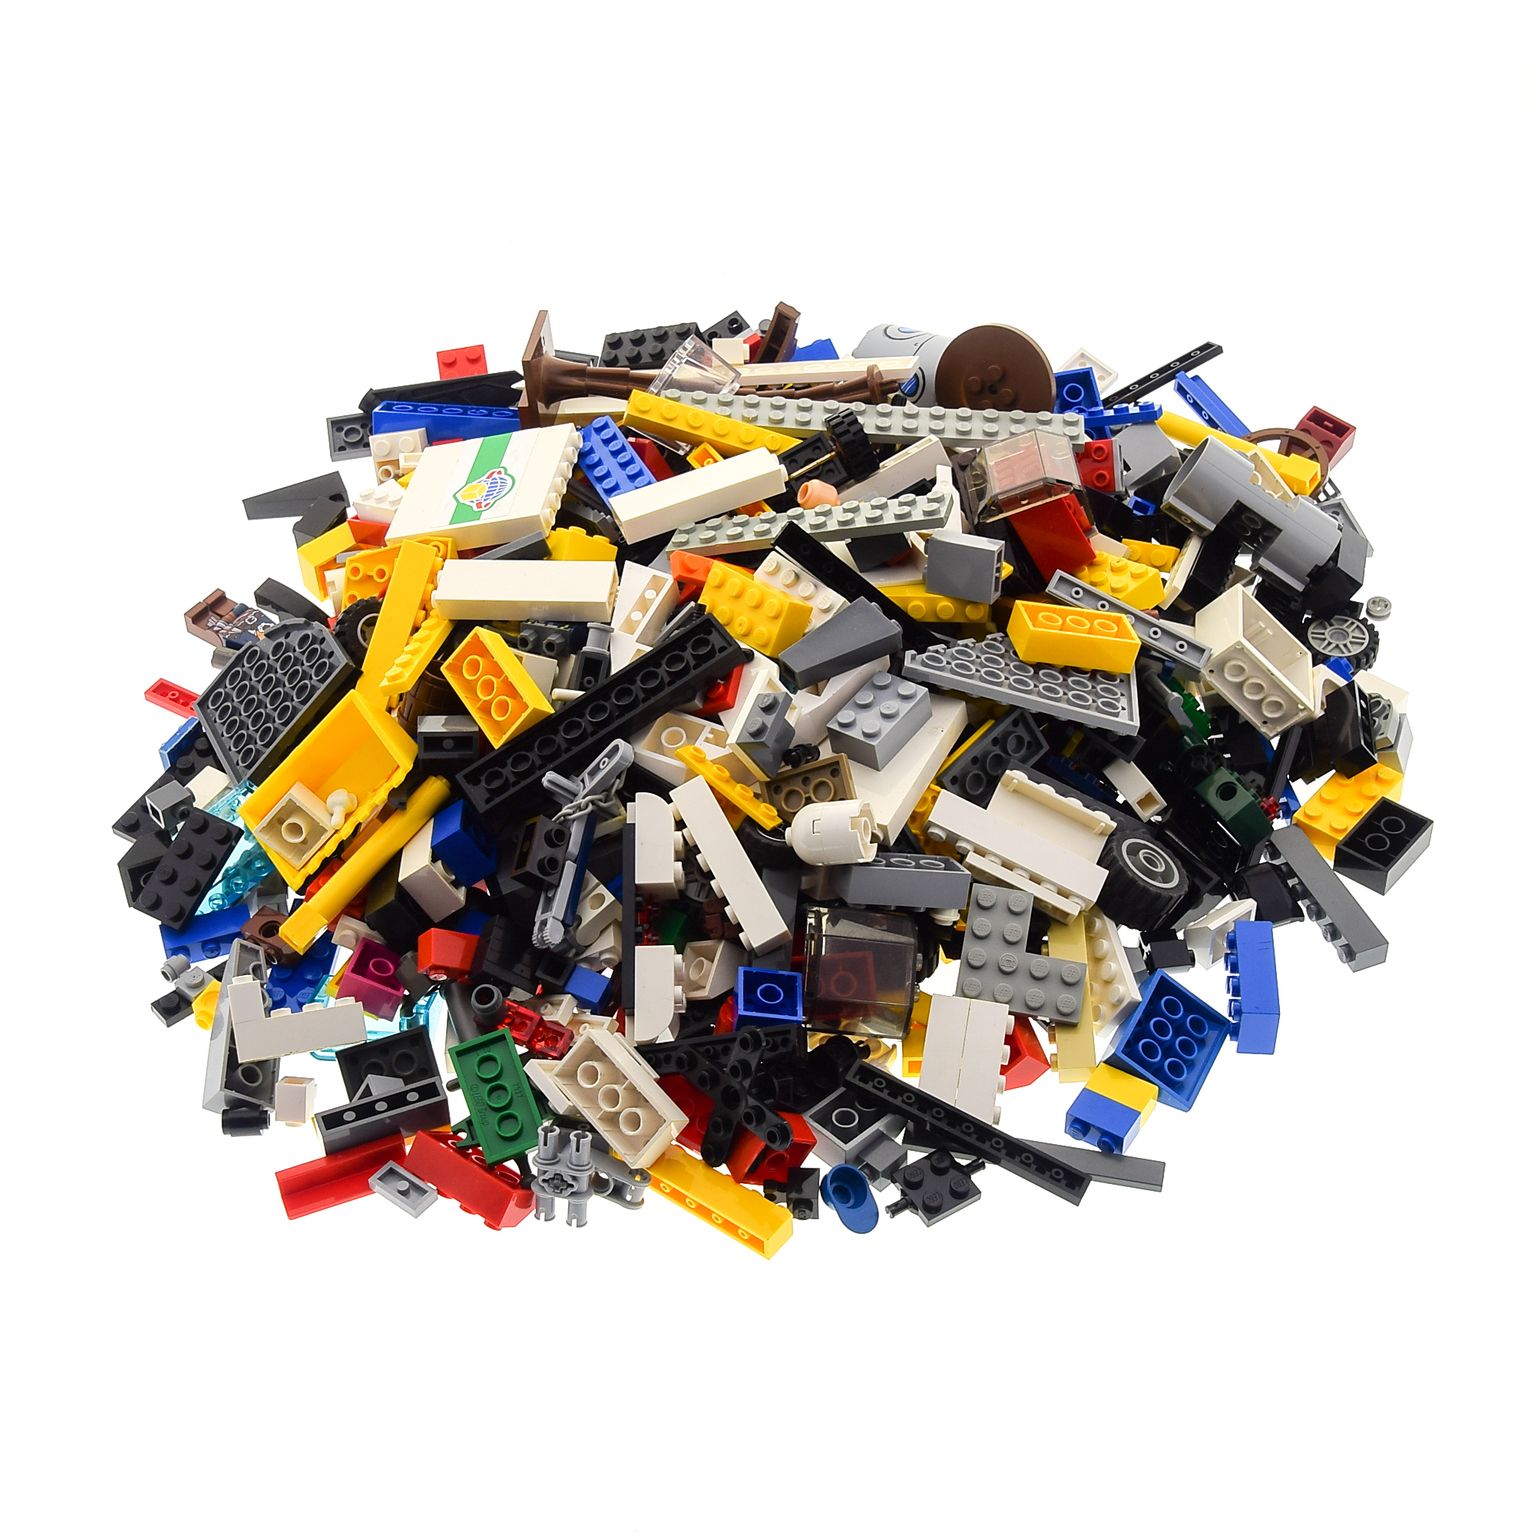 Räder Platten 1 Kg Lego System Steine Bau Basic Teile Kiloware gemischt z.B 